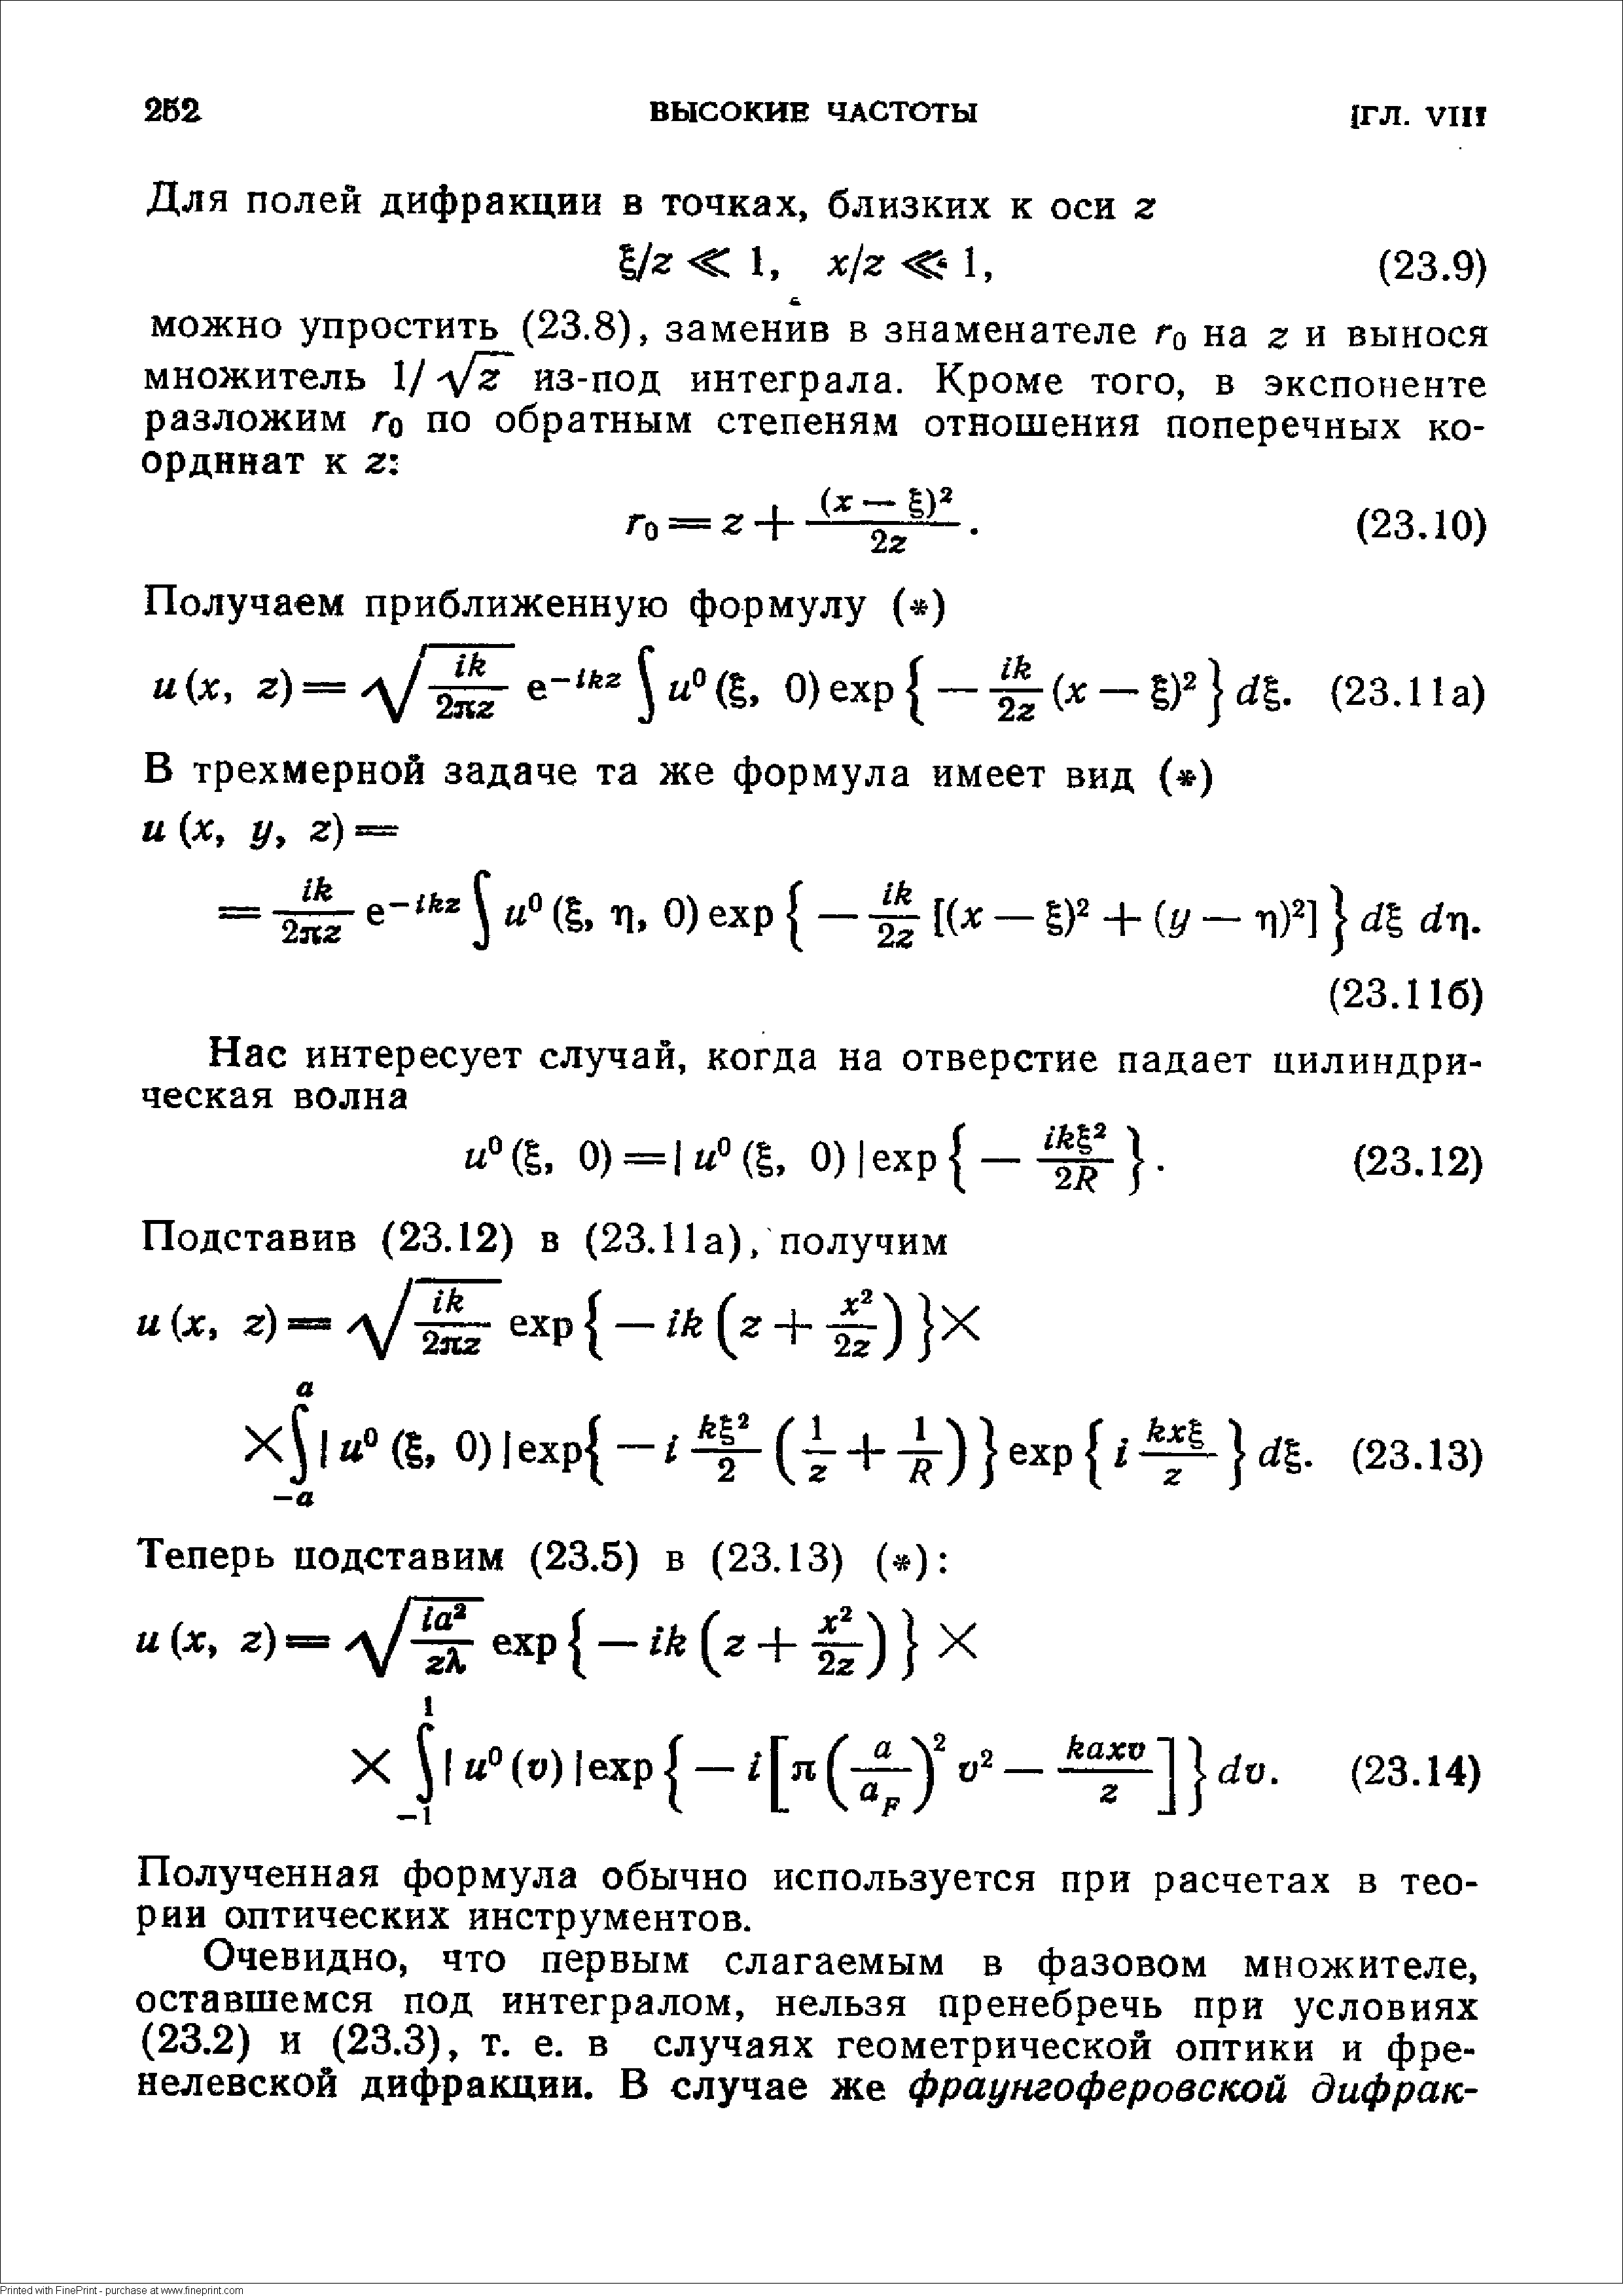 Полученная формула обычно используется при расчетах в теории оптических инструментов.
